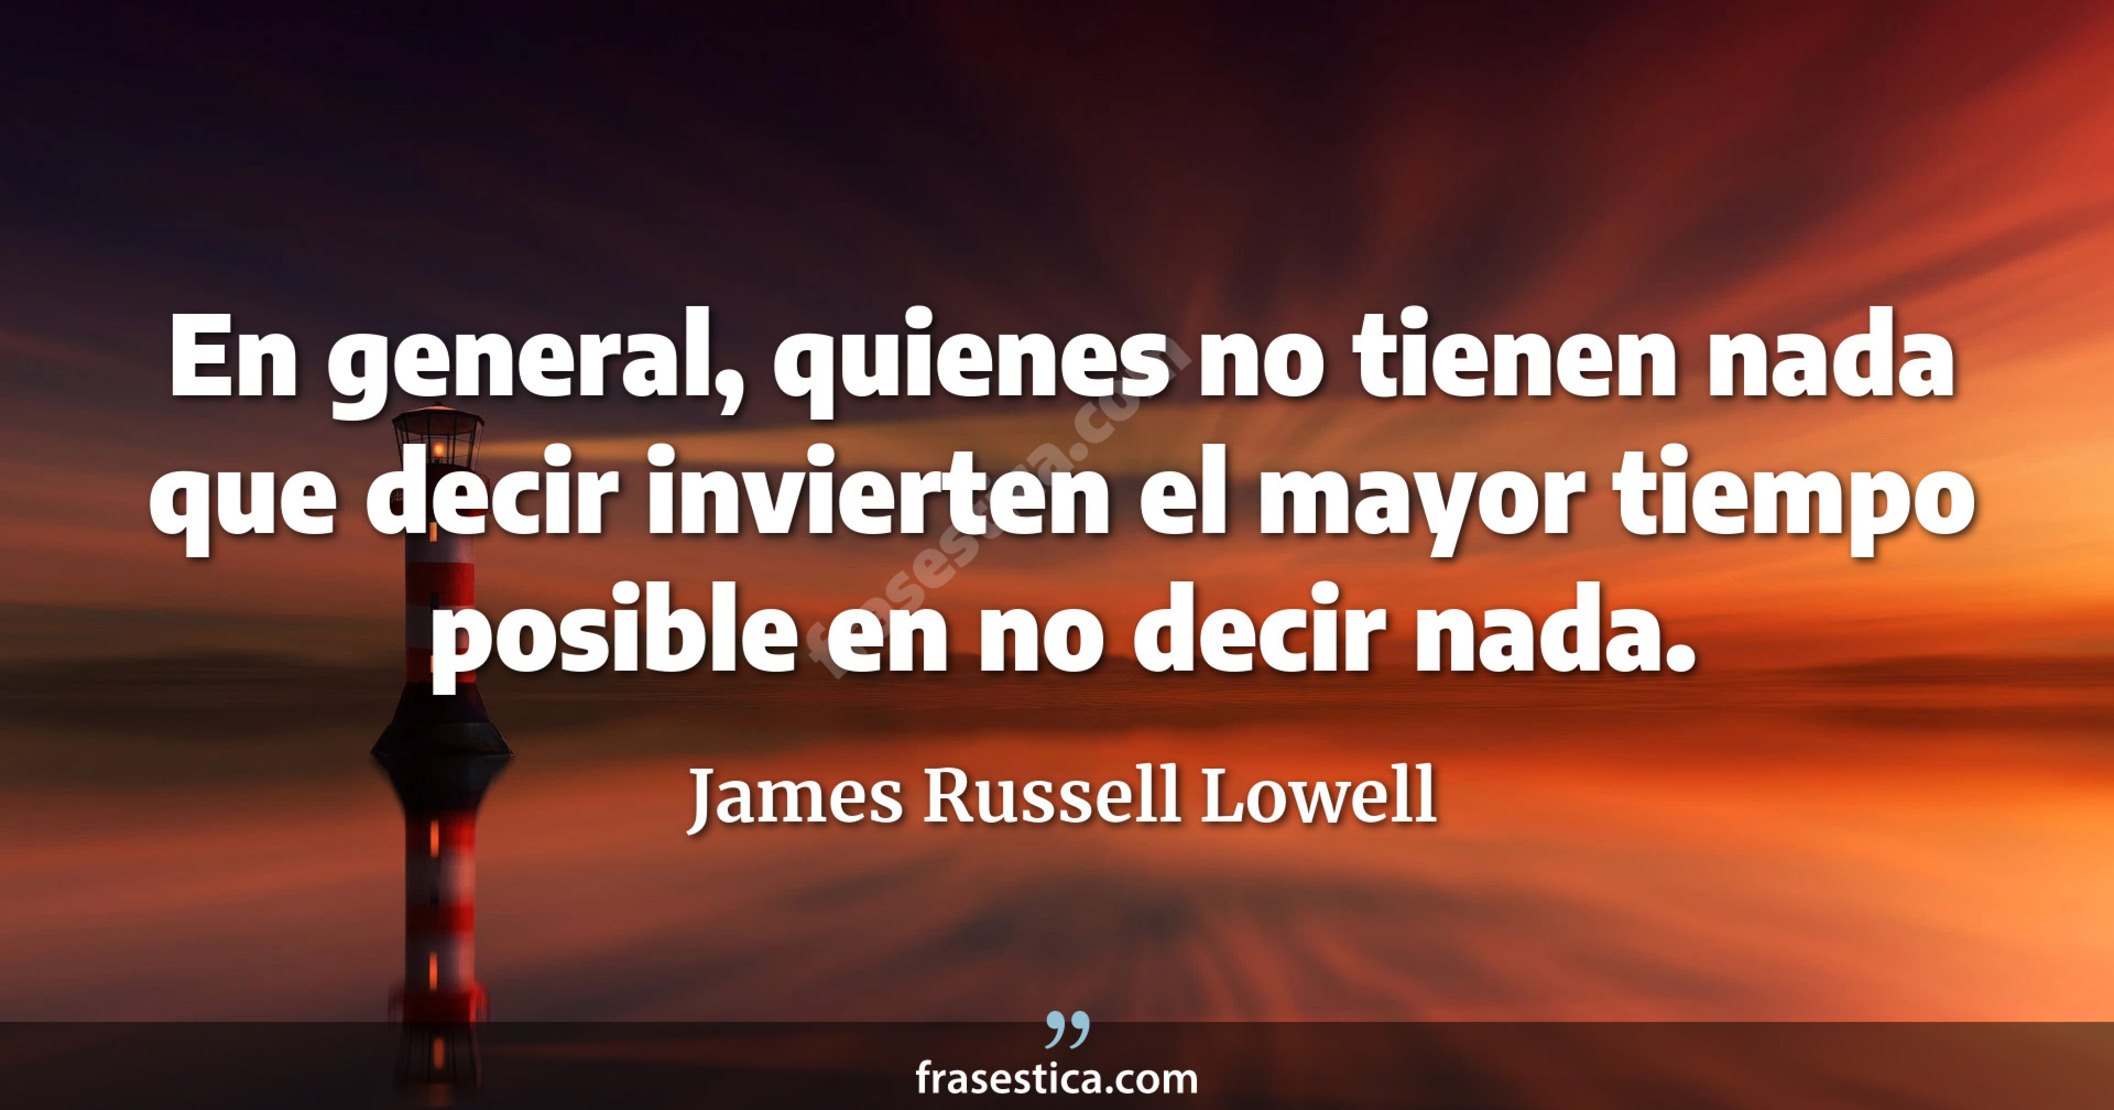 En general, quienes no tienen nada que decir invierten el mayor tiempo posible en no decir nada. - James Russell Lowell